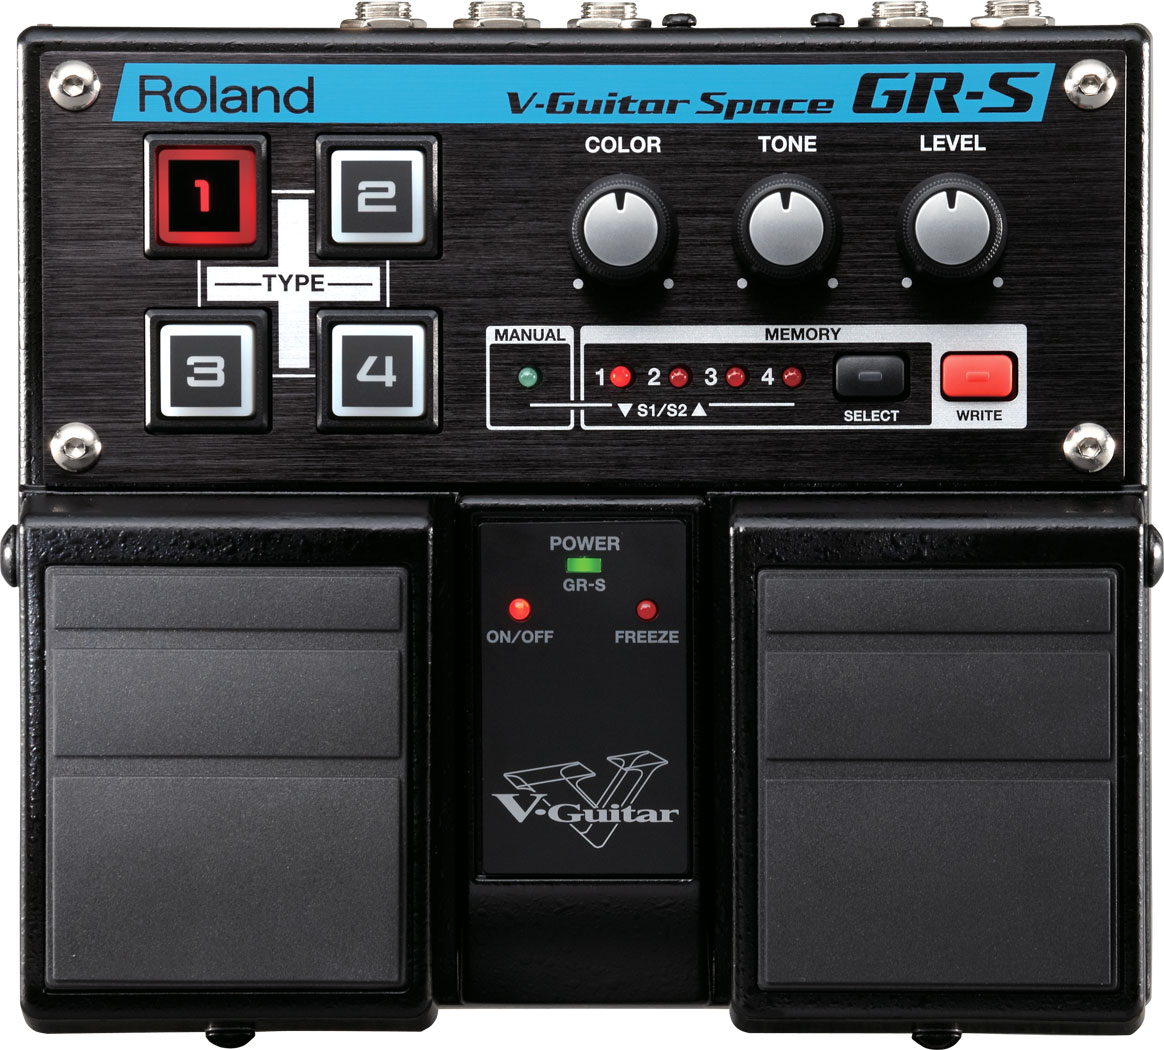 GR-S | V-Guitar Space - Roland